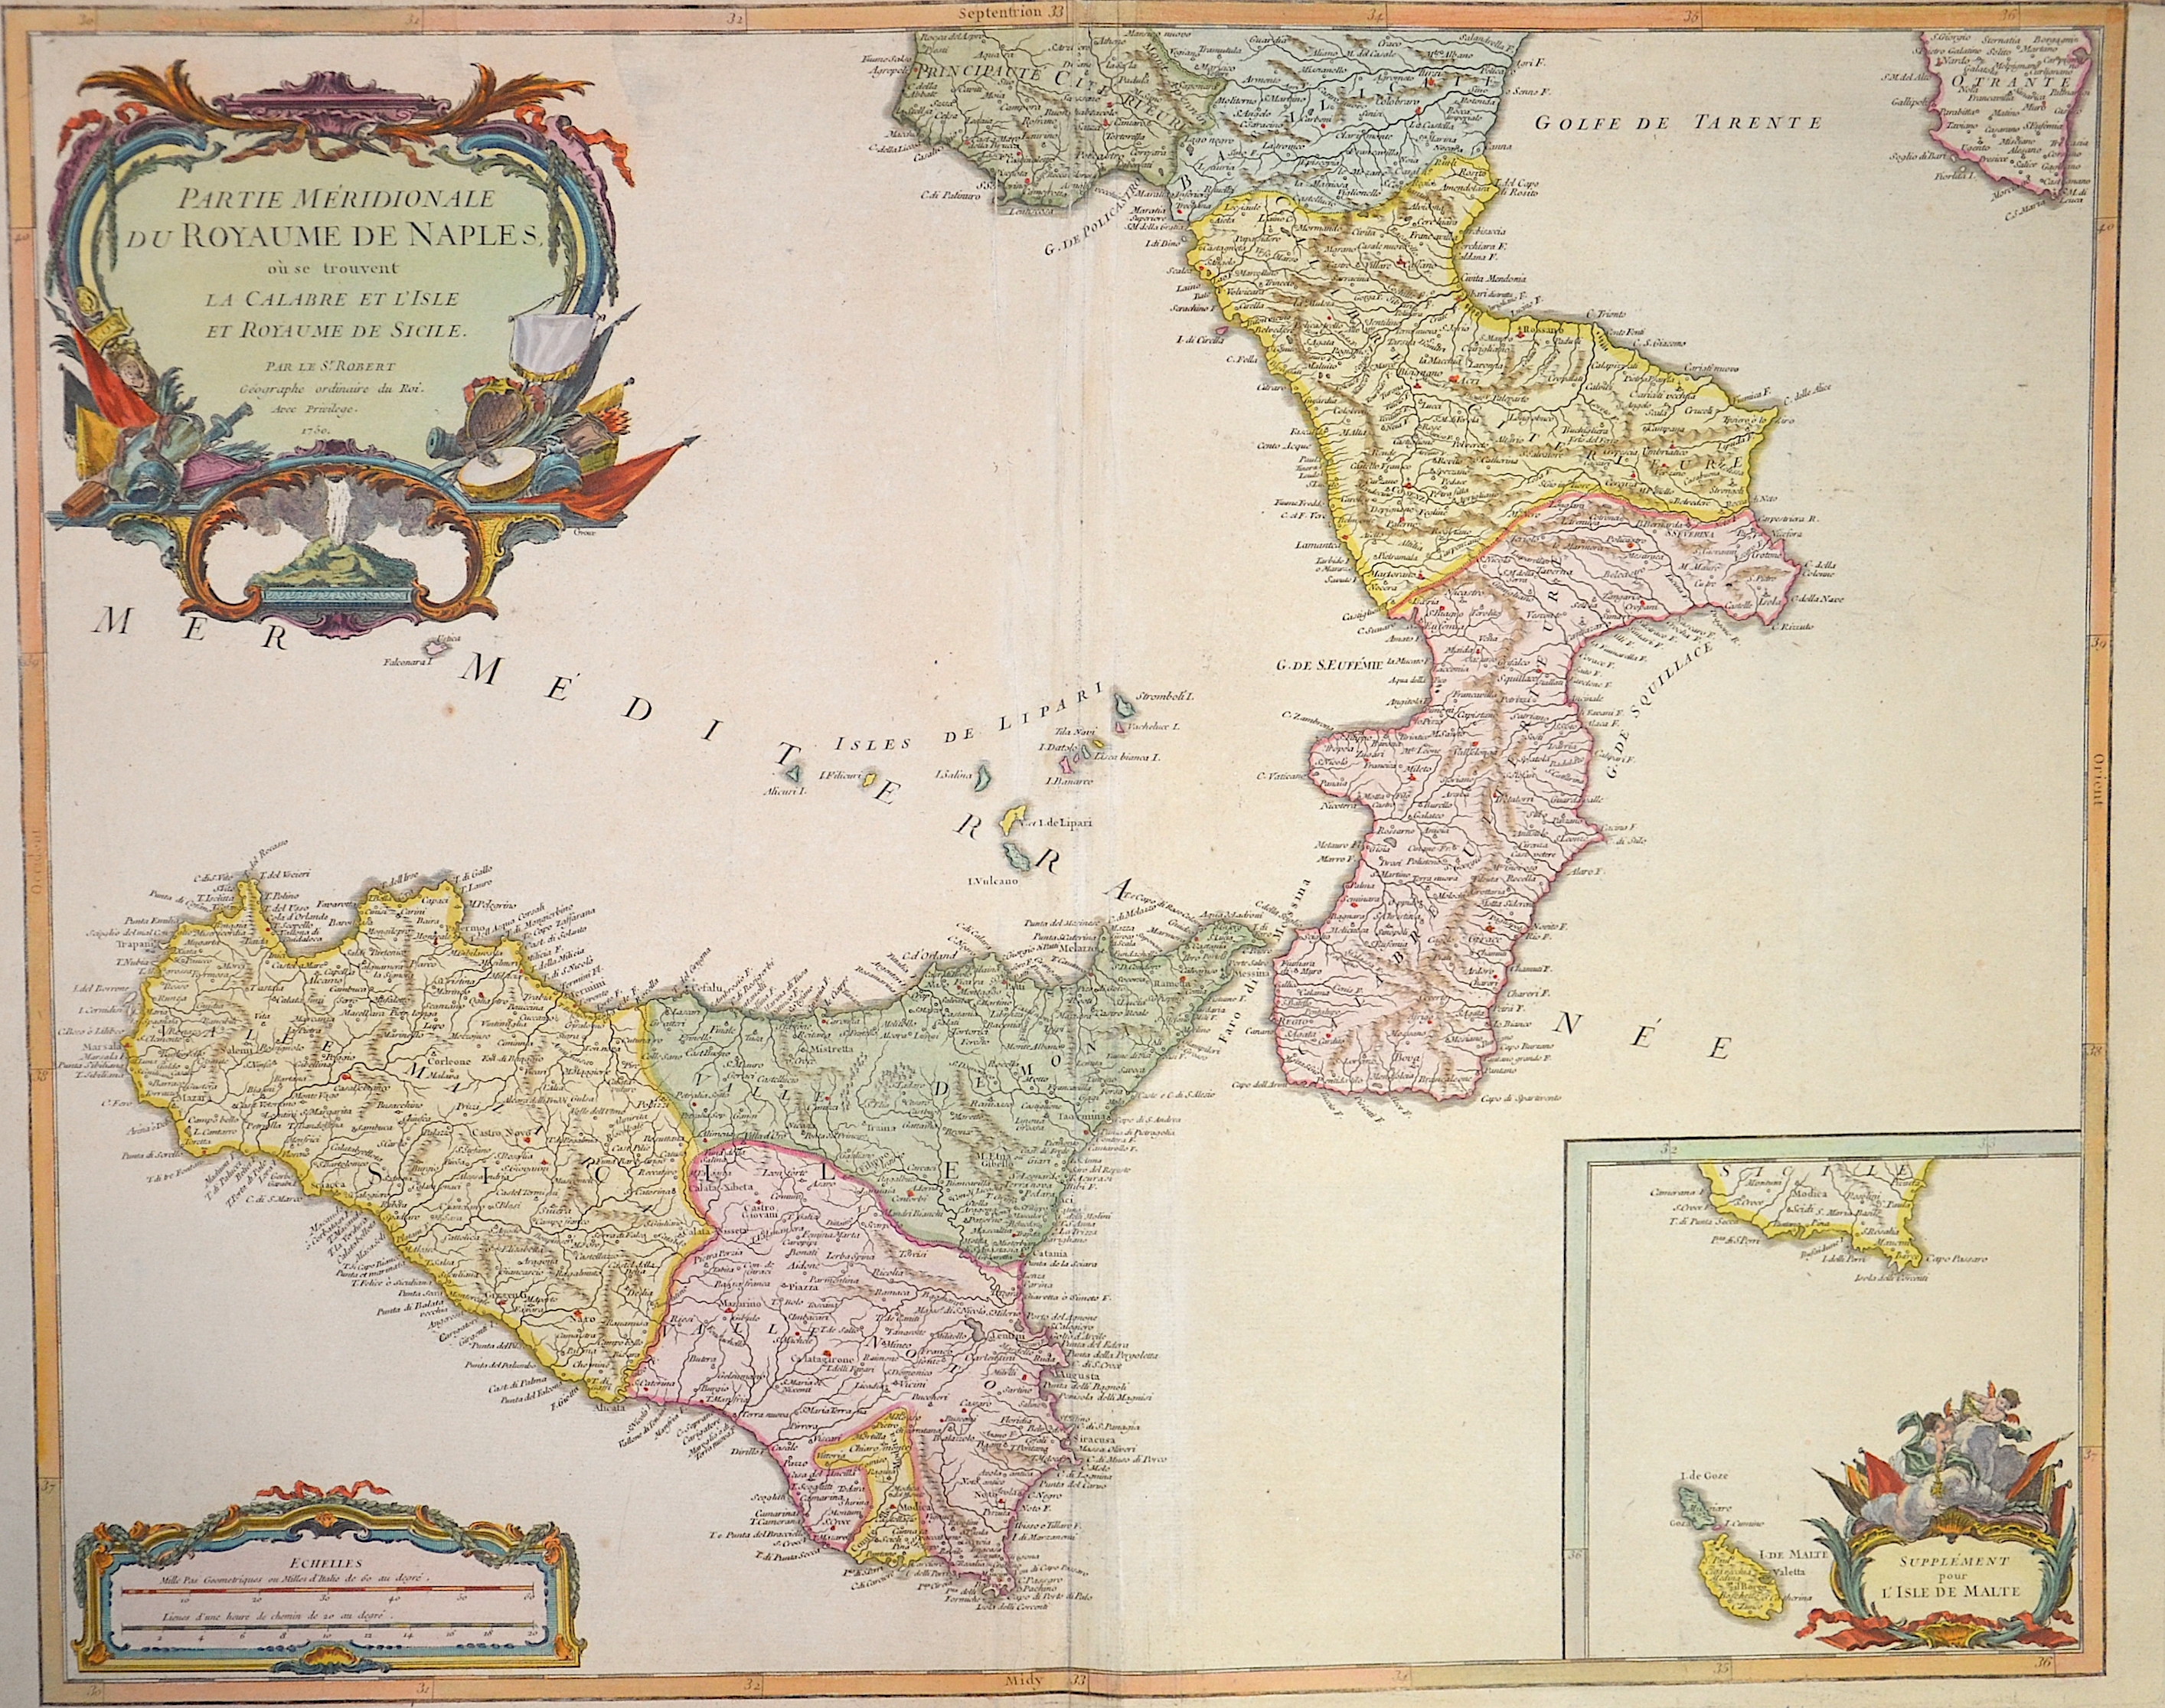 Vaugondy, de Didier/ Gilles Robert Partie meridionale du Royaume de Naples , au se trouvent la Calabrie et l´isle et Royaume de Sicilie